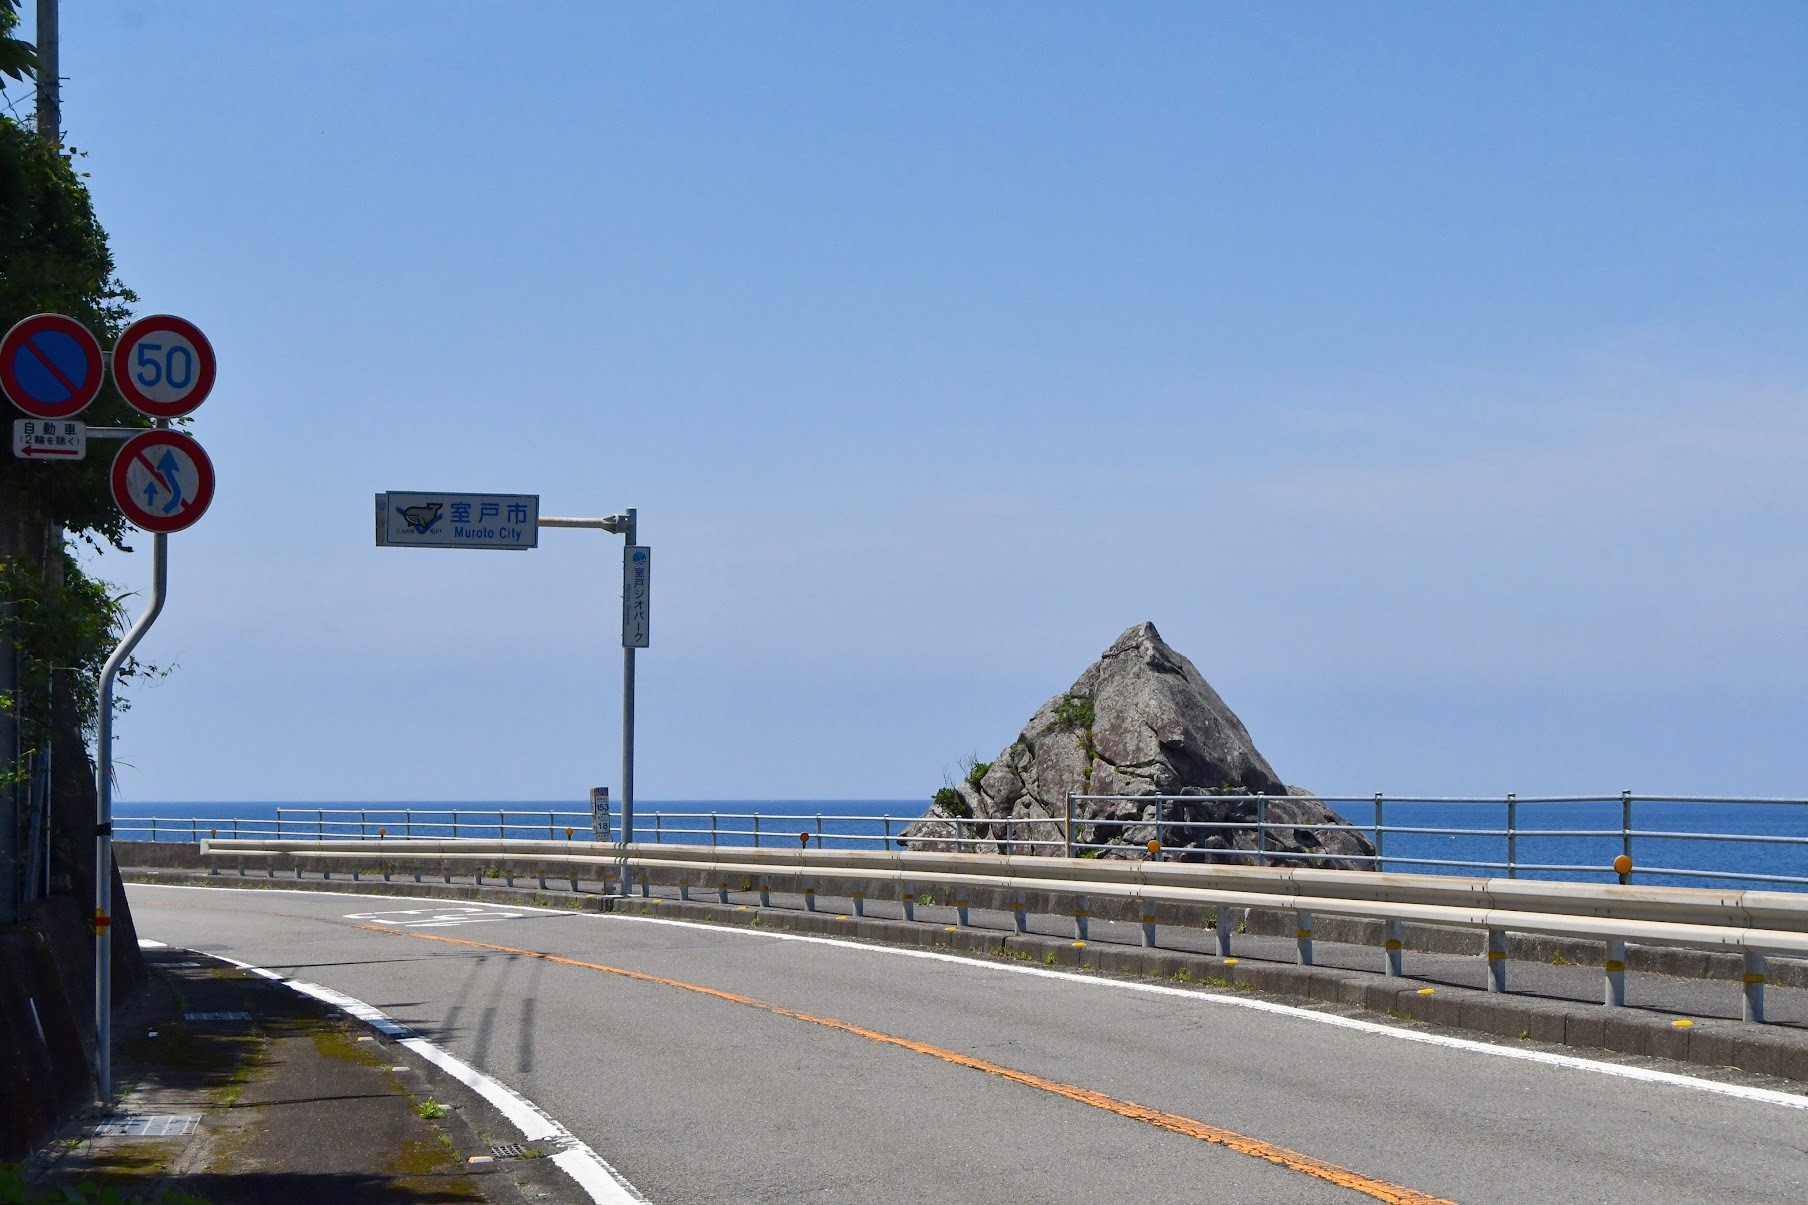 羽根岬には広い車寄せがありますが、海岸側への横断にはくれぐれも注意してください！